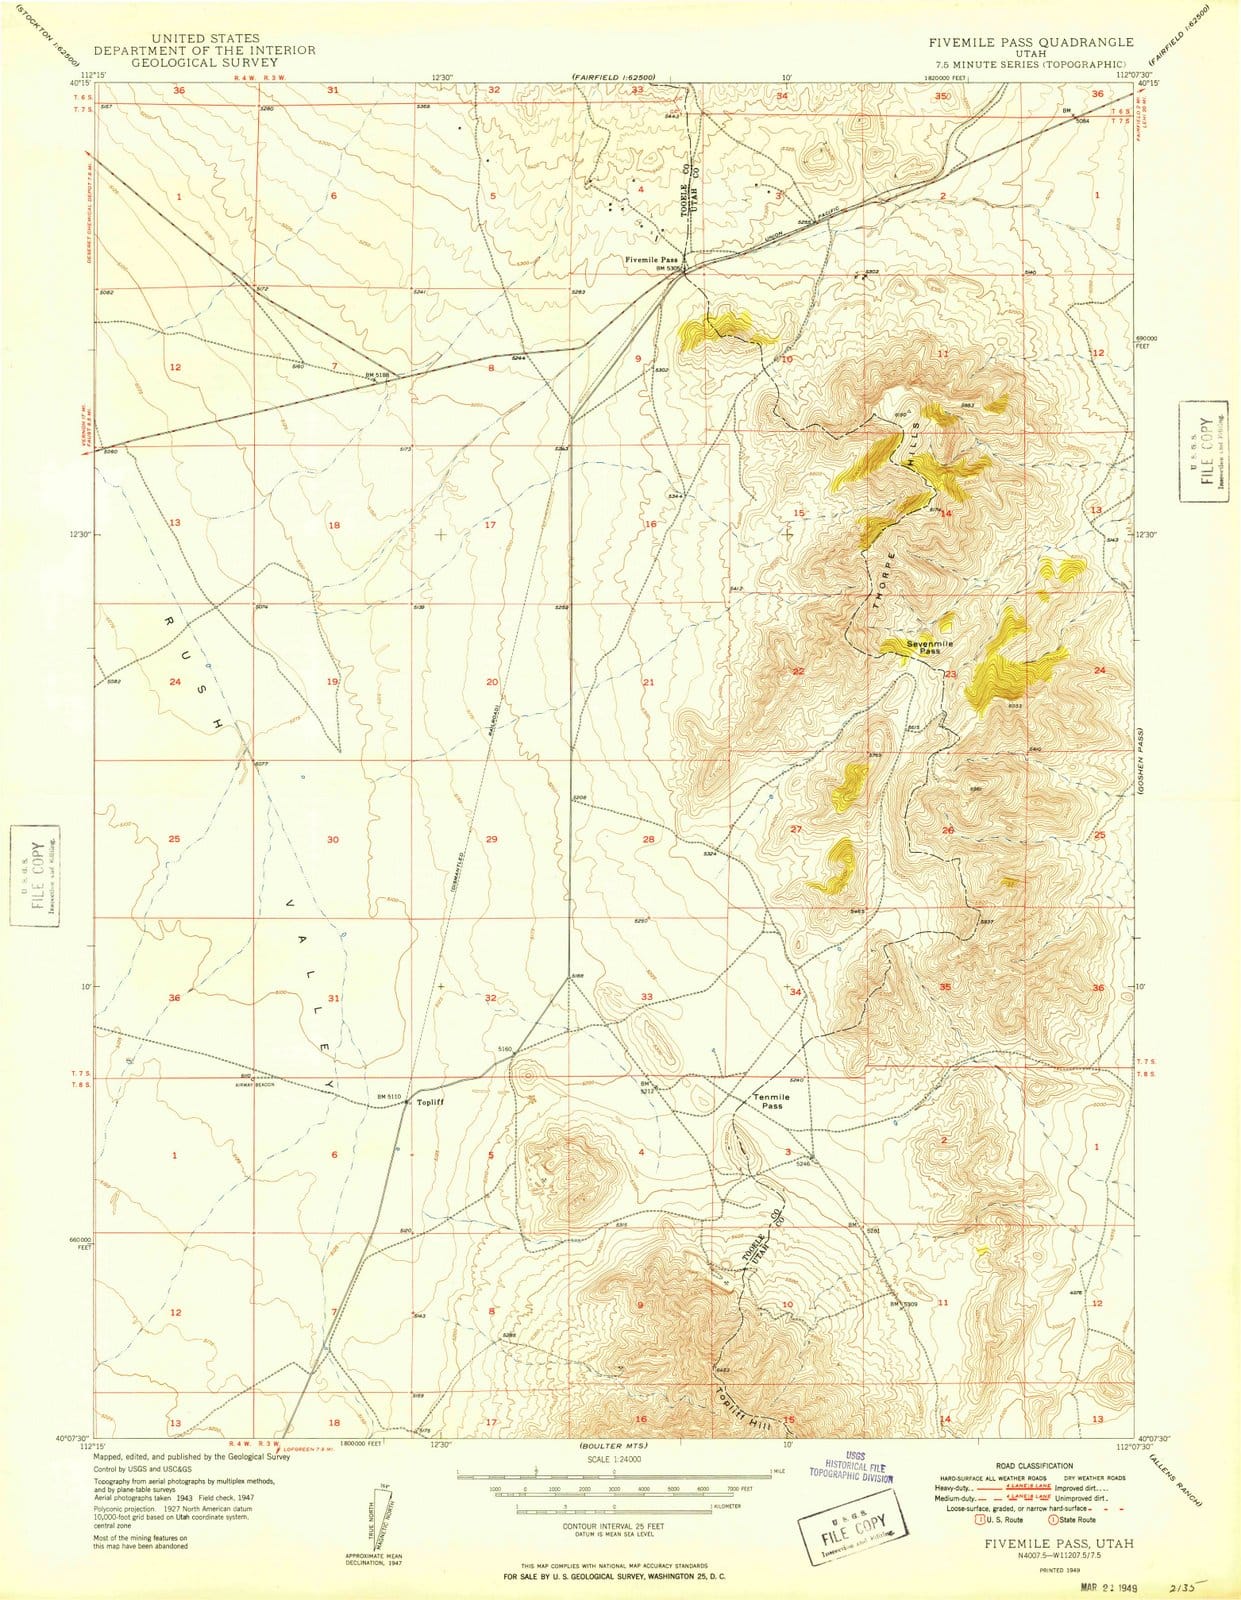 1949 Fivemile Pass, UT - Utah - USGS Topographic Map